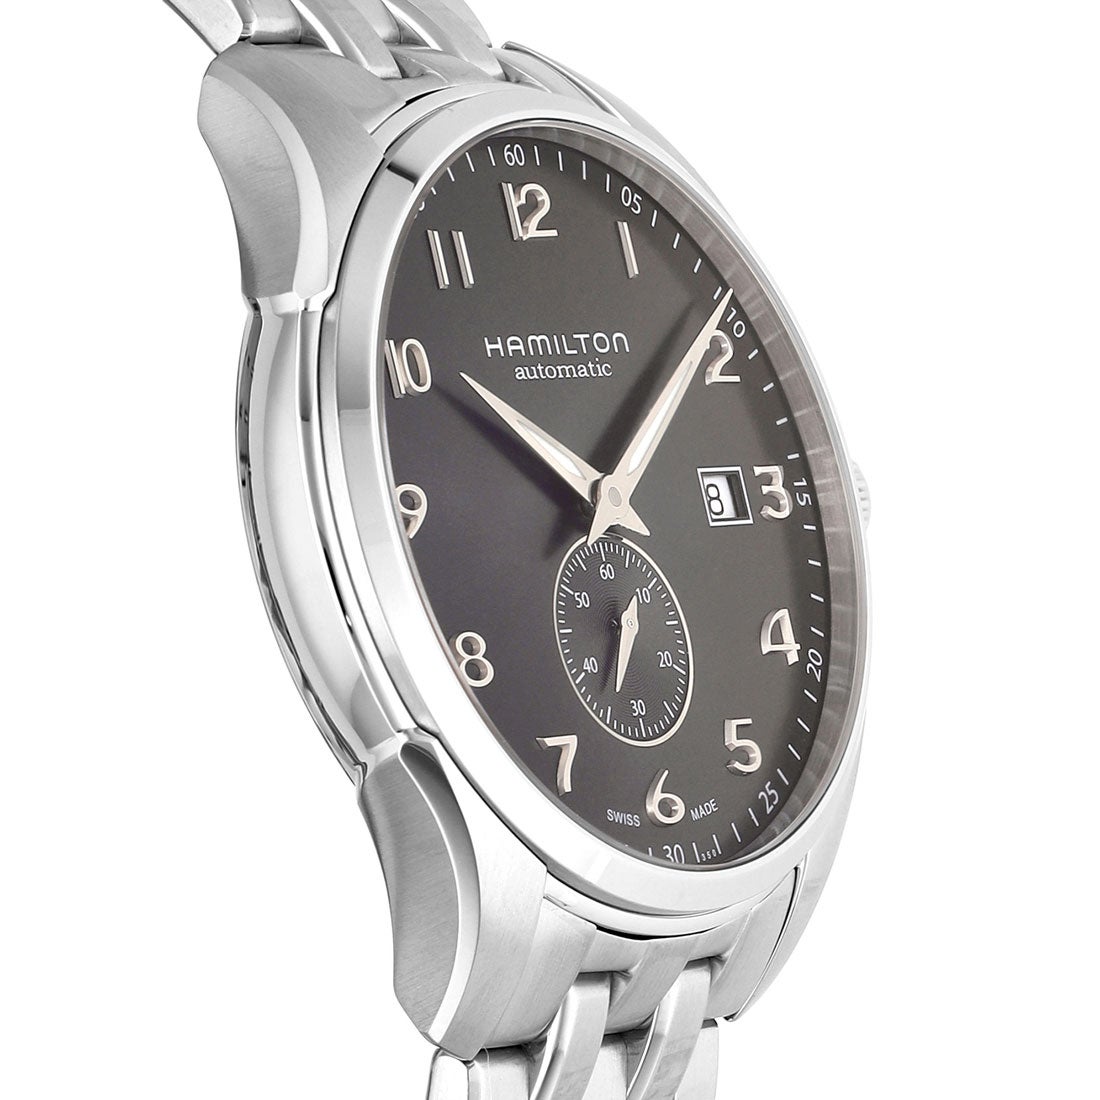 ハミルトン HAMILTON 腕時計 メンズ H42515135 自動巻き ブラックxシルバー アナログ表示